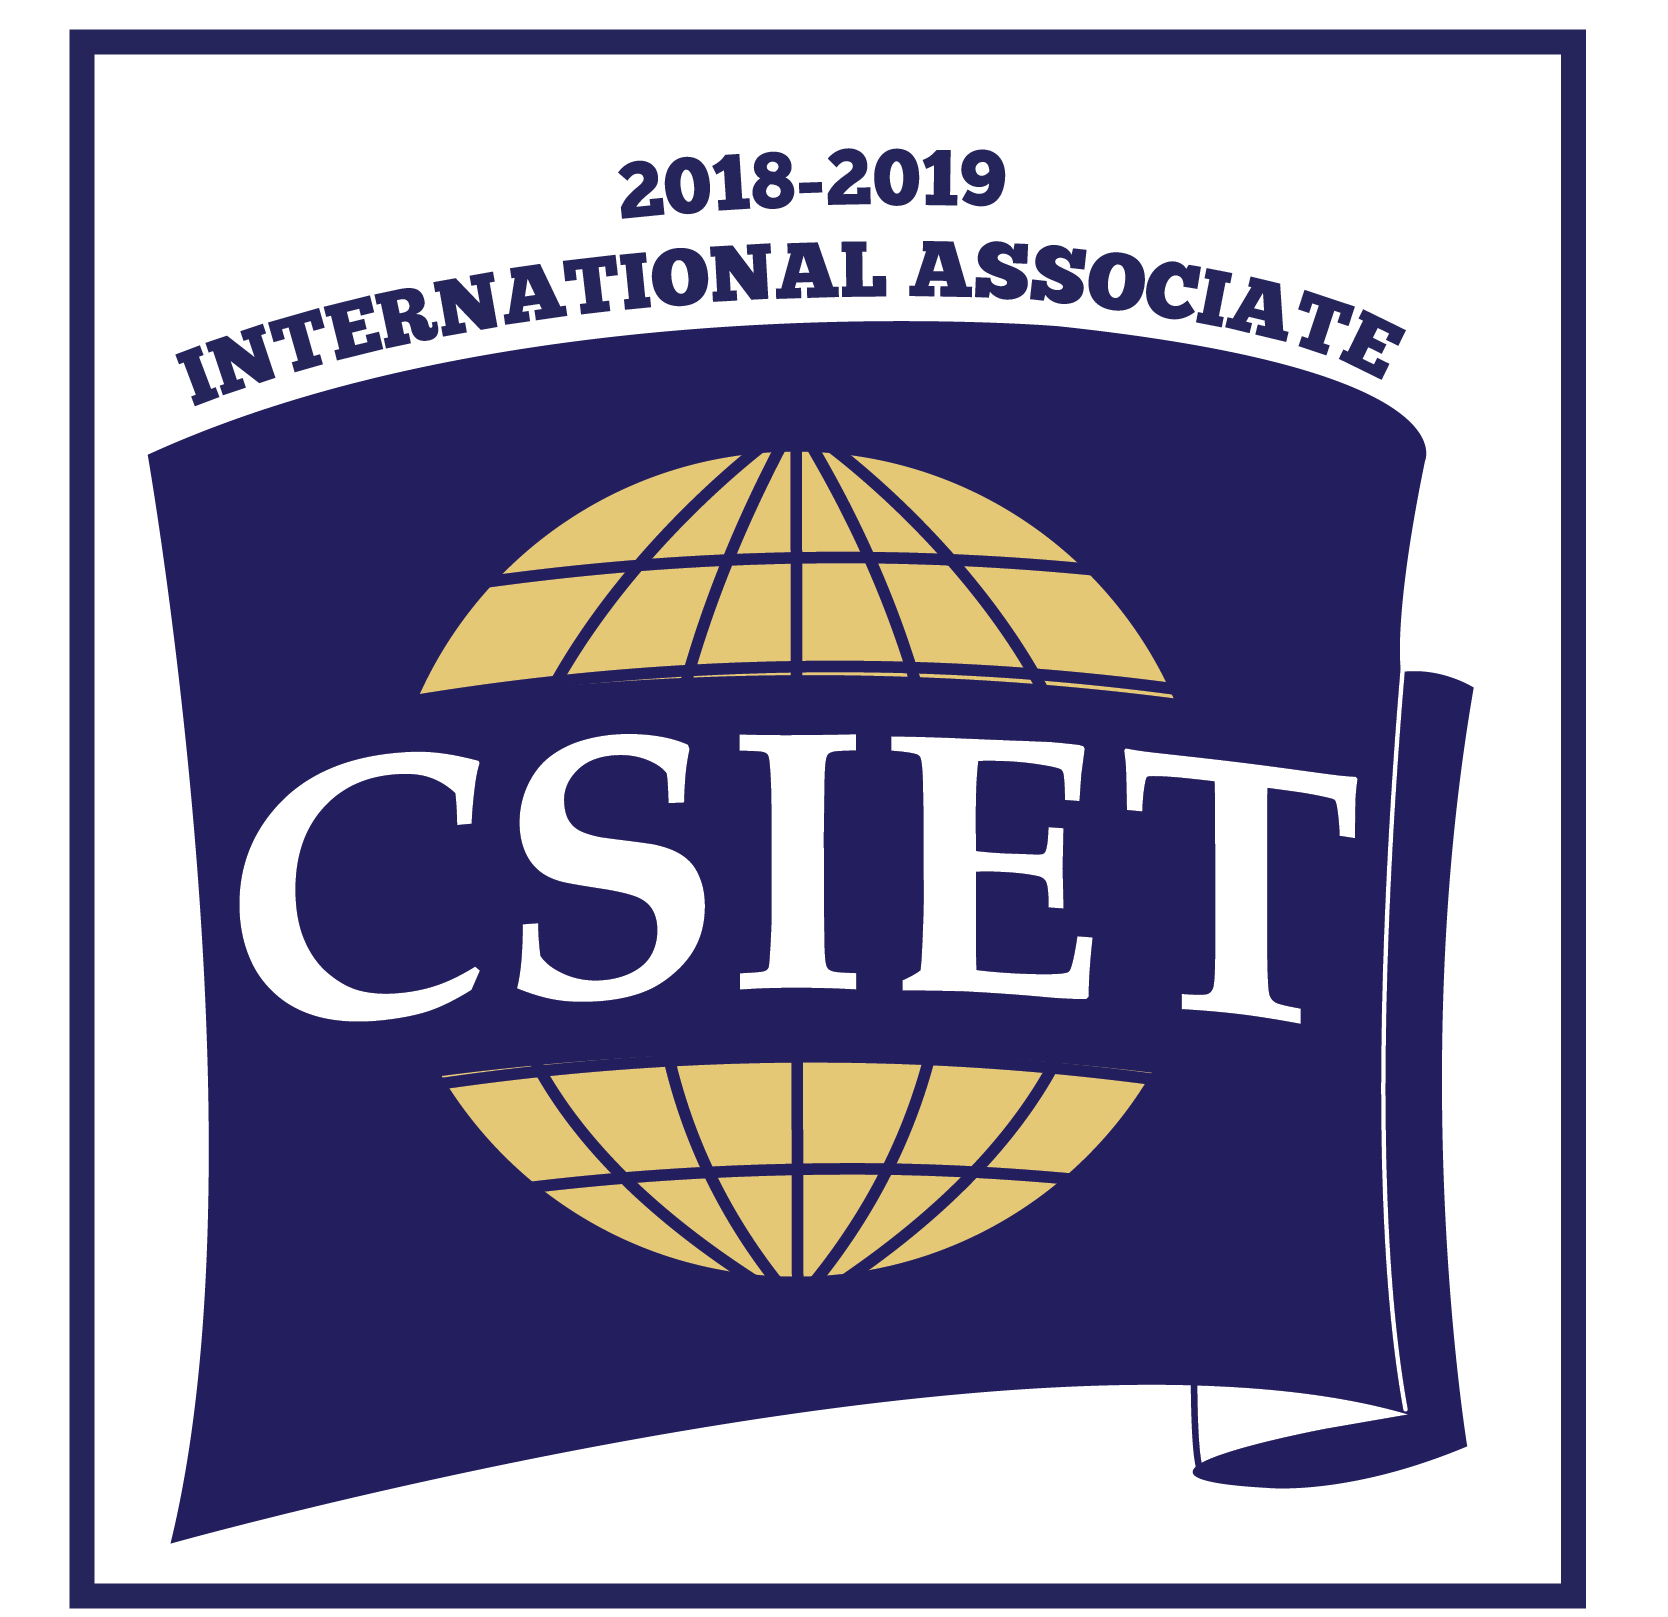 CSIET International Associate Logo.png